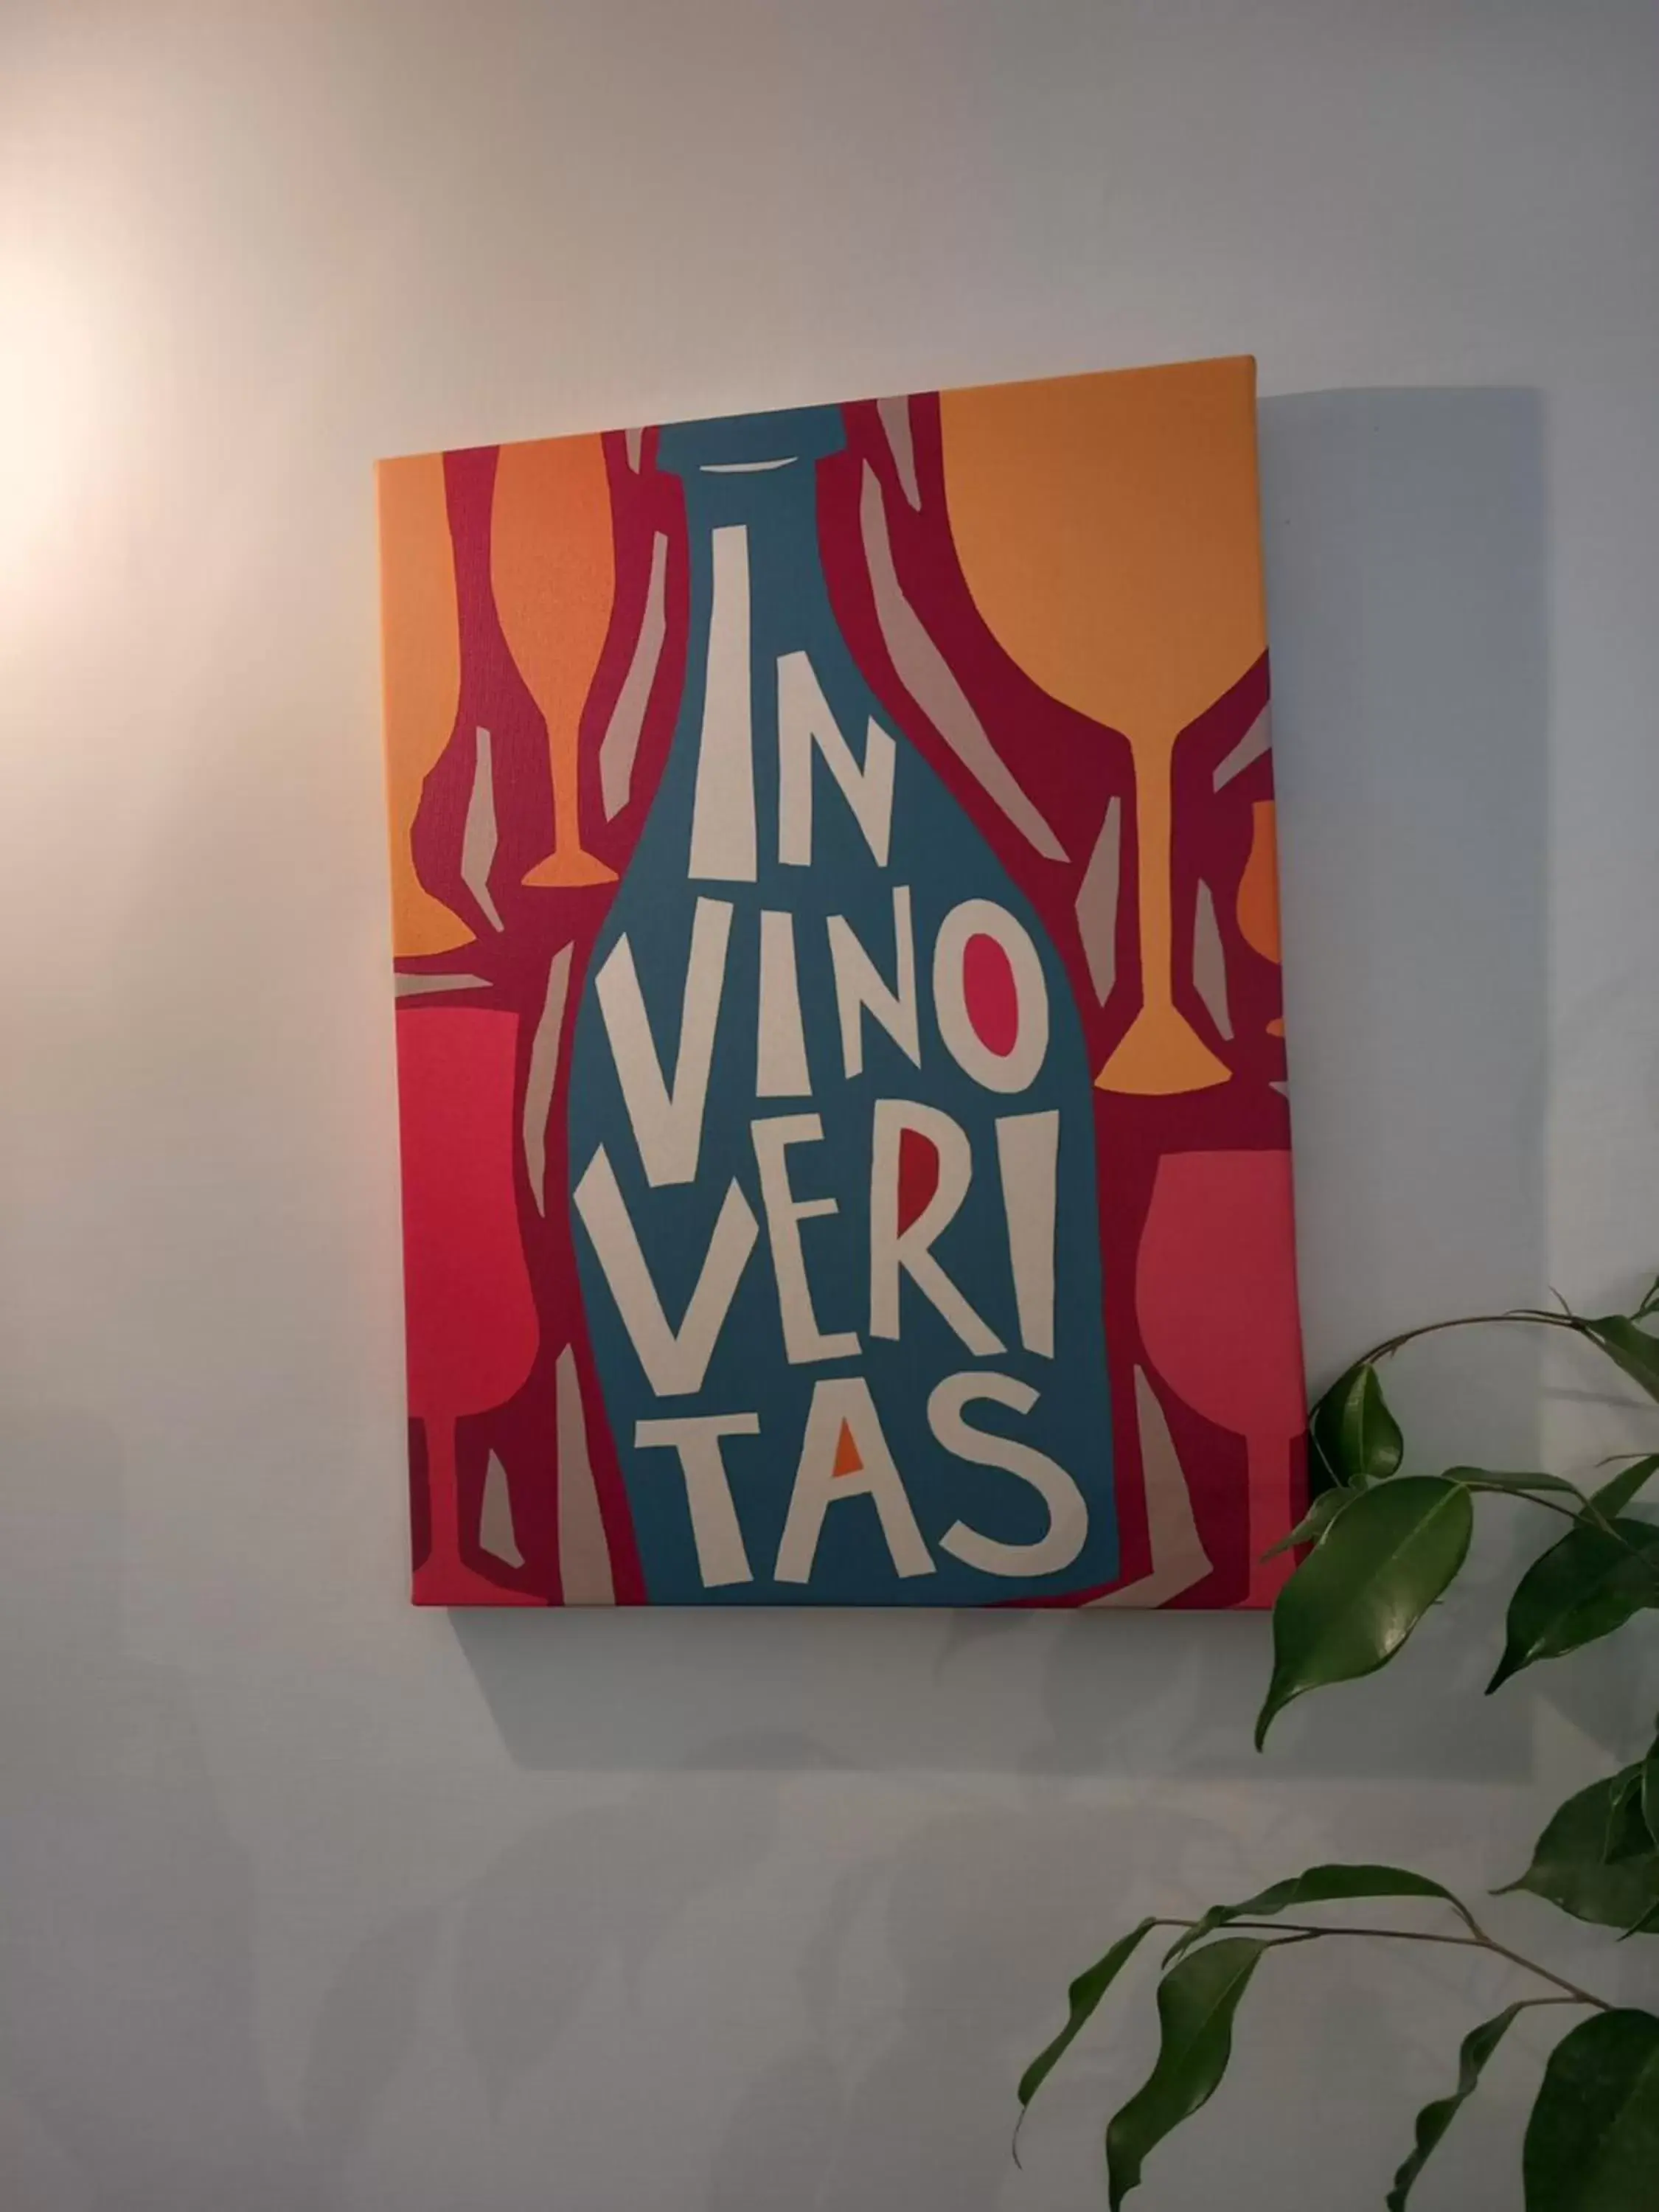 Property logo or sign in In Vino Veritas